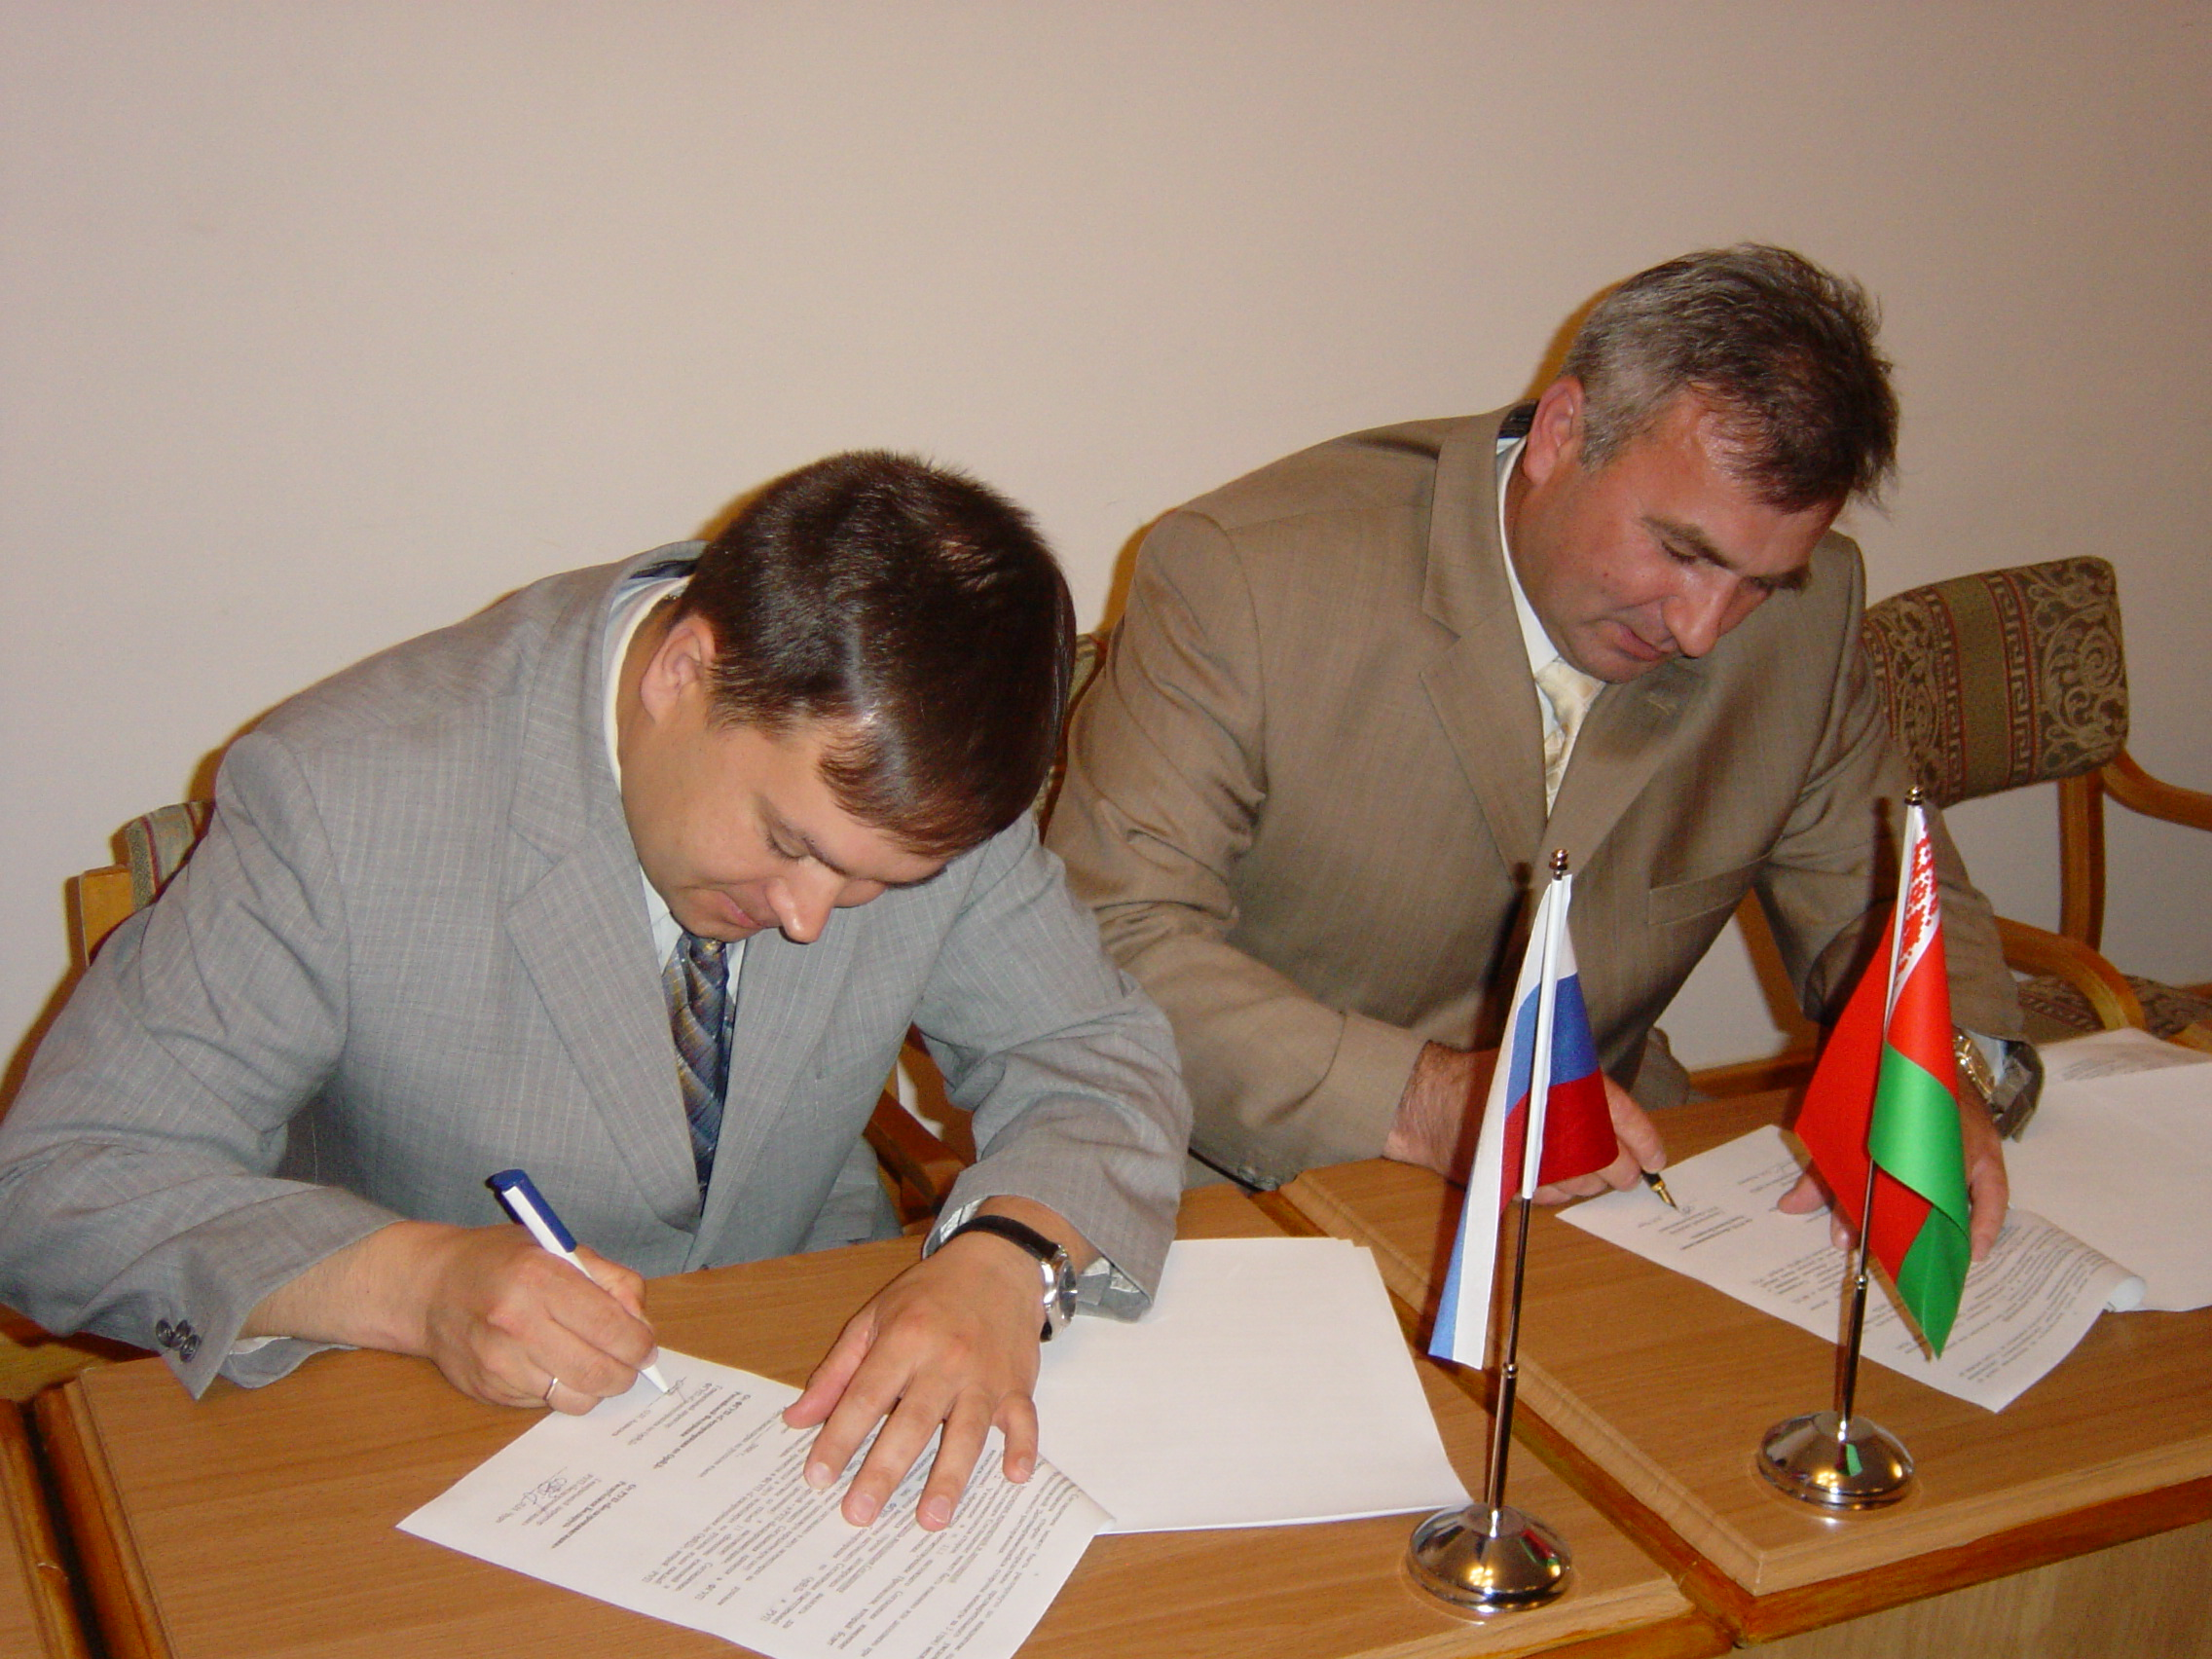 КС "Евразия" 12.2006 г. Подписание соглашения.